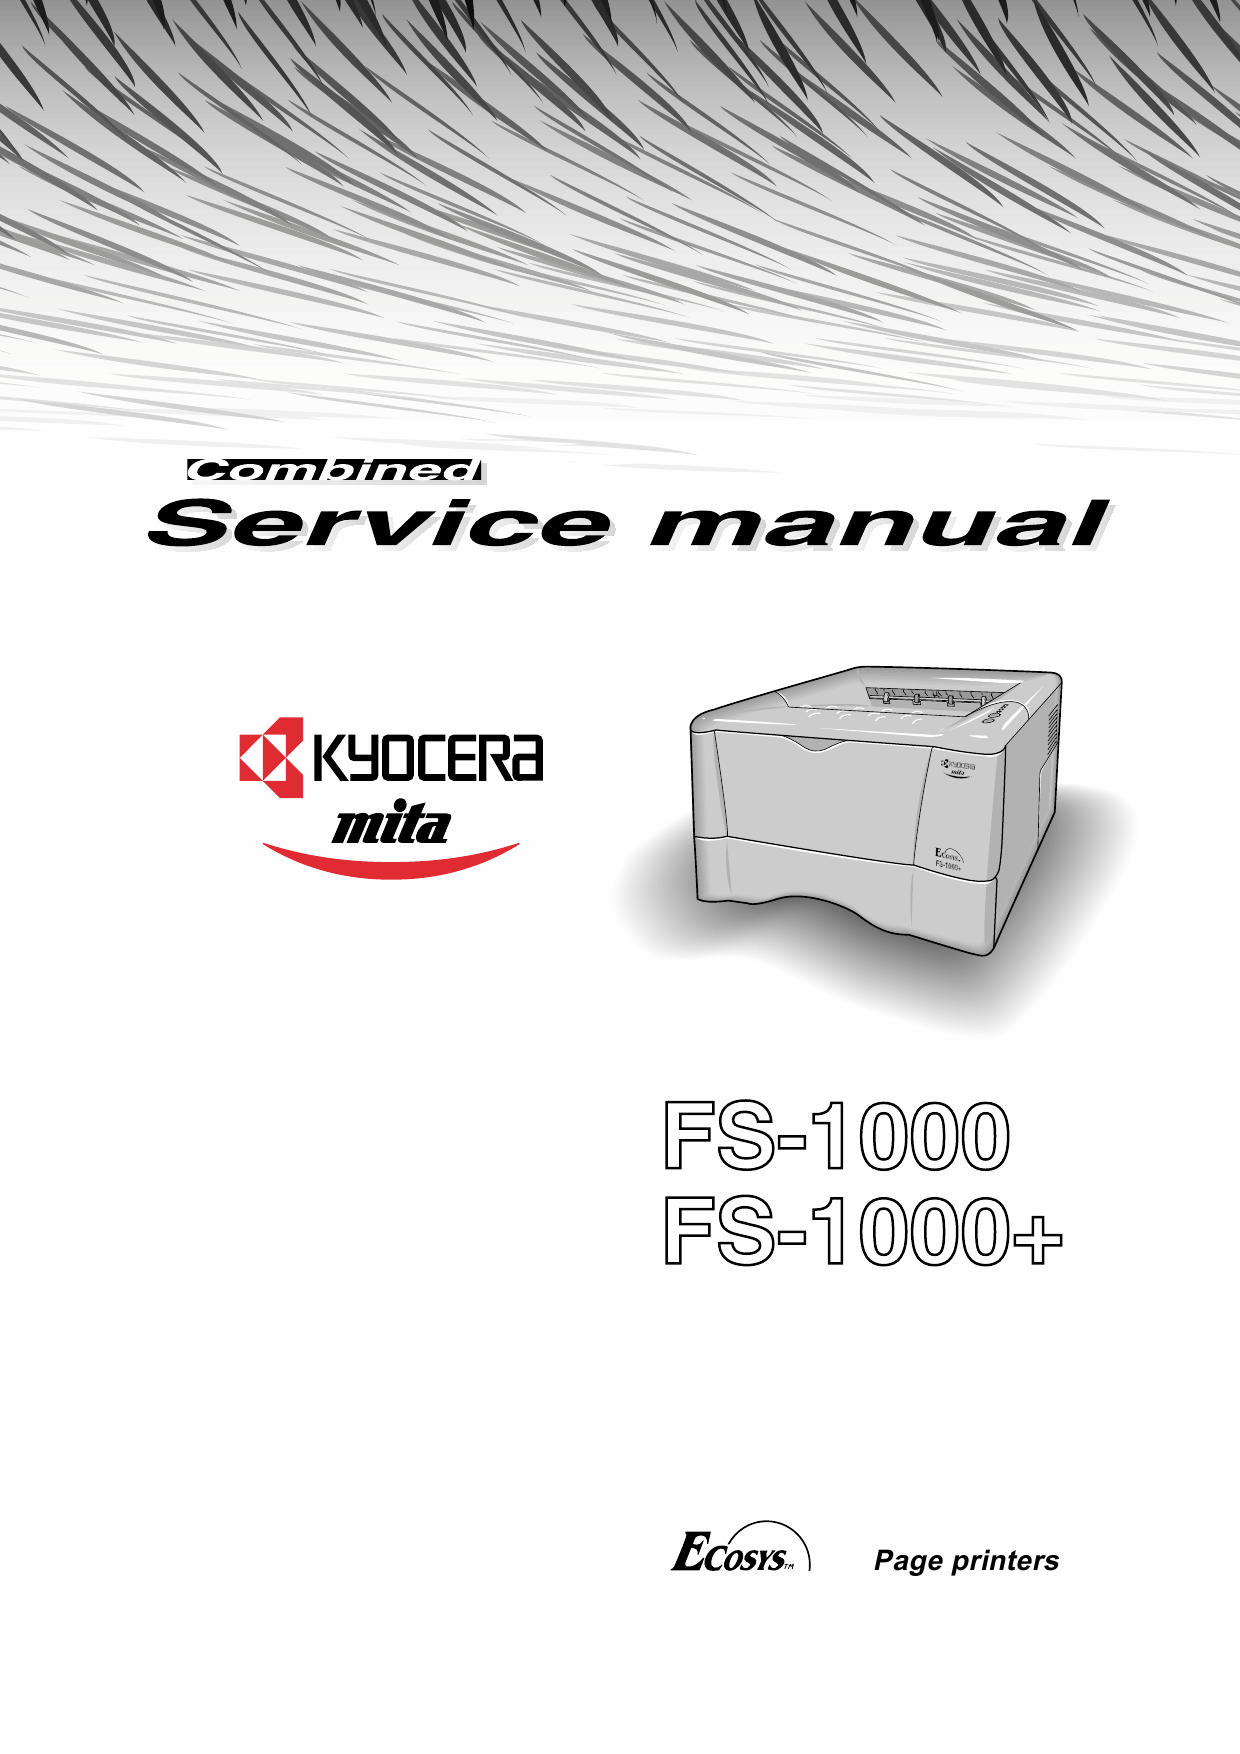 Kyocera service manual. Kyocera FS-1000. Kyocera f1000. Kyocera km-5530. F1000 инструкция.